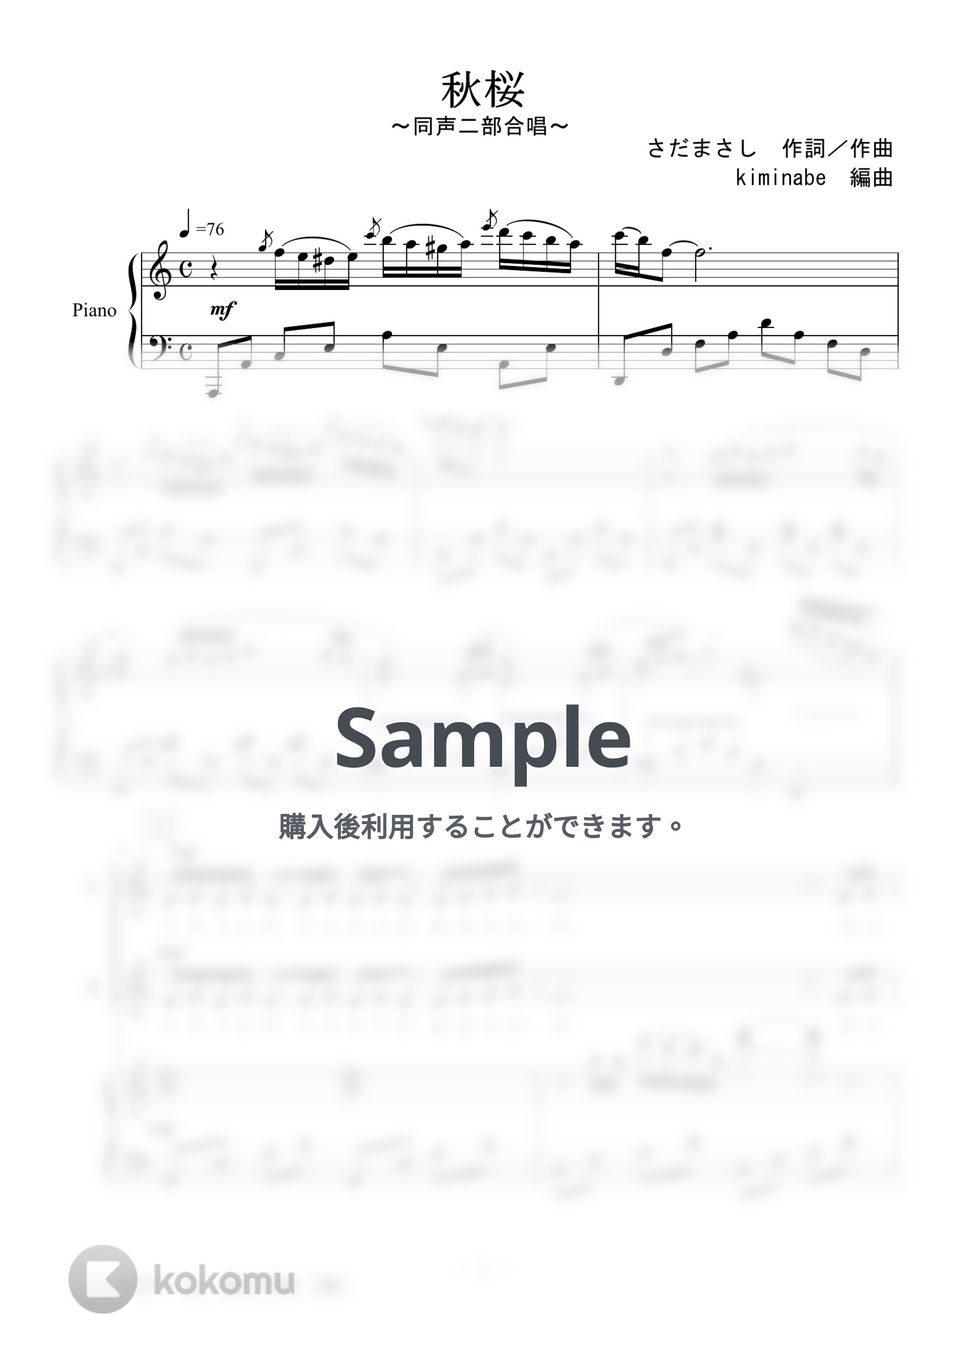 山口百恵 - 秋桜 (同声二部合唱) by kiminabe